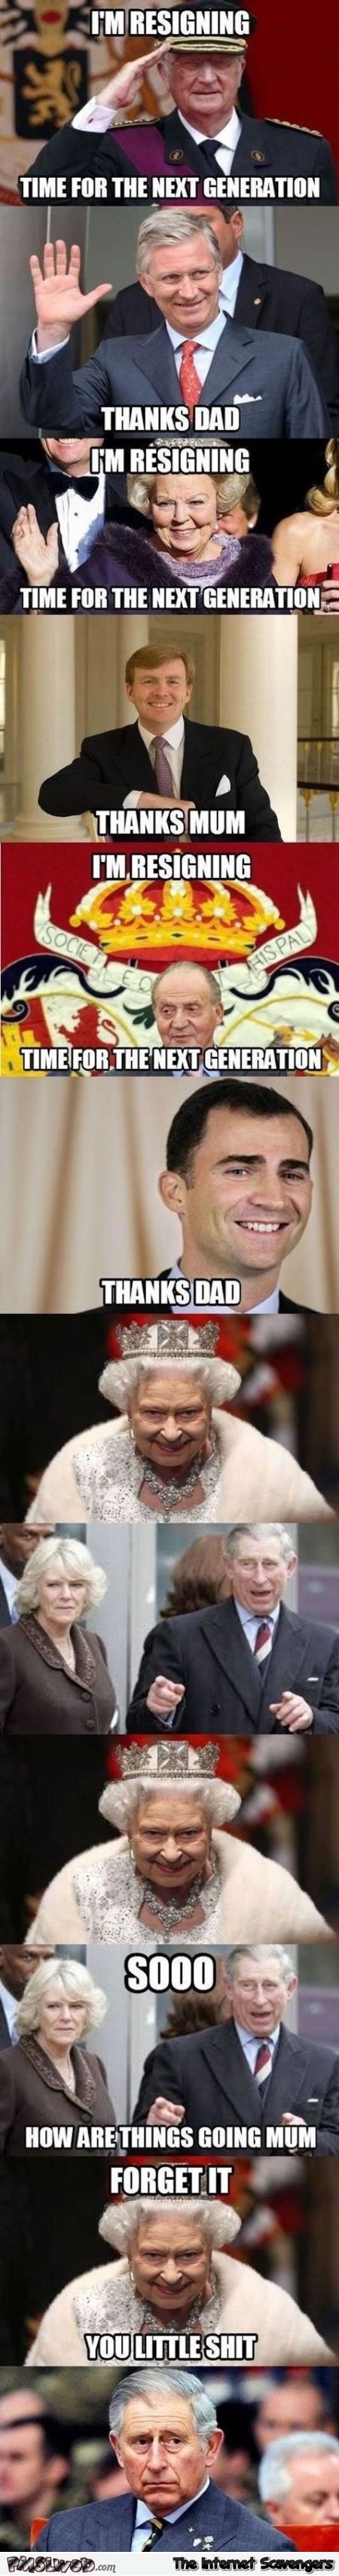 Hilarious queen never abdicates meme @PMSLweb.com